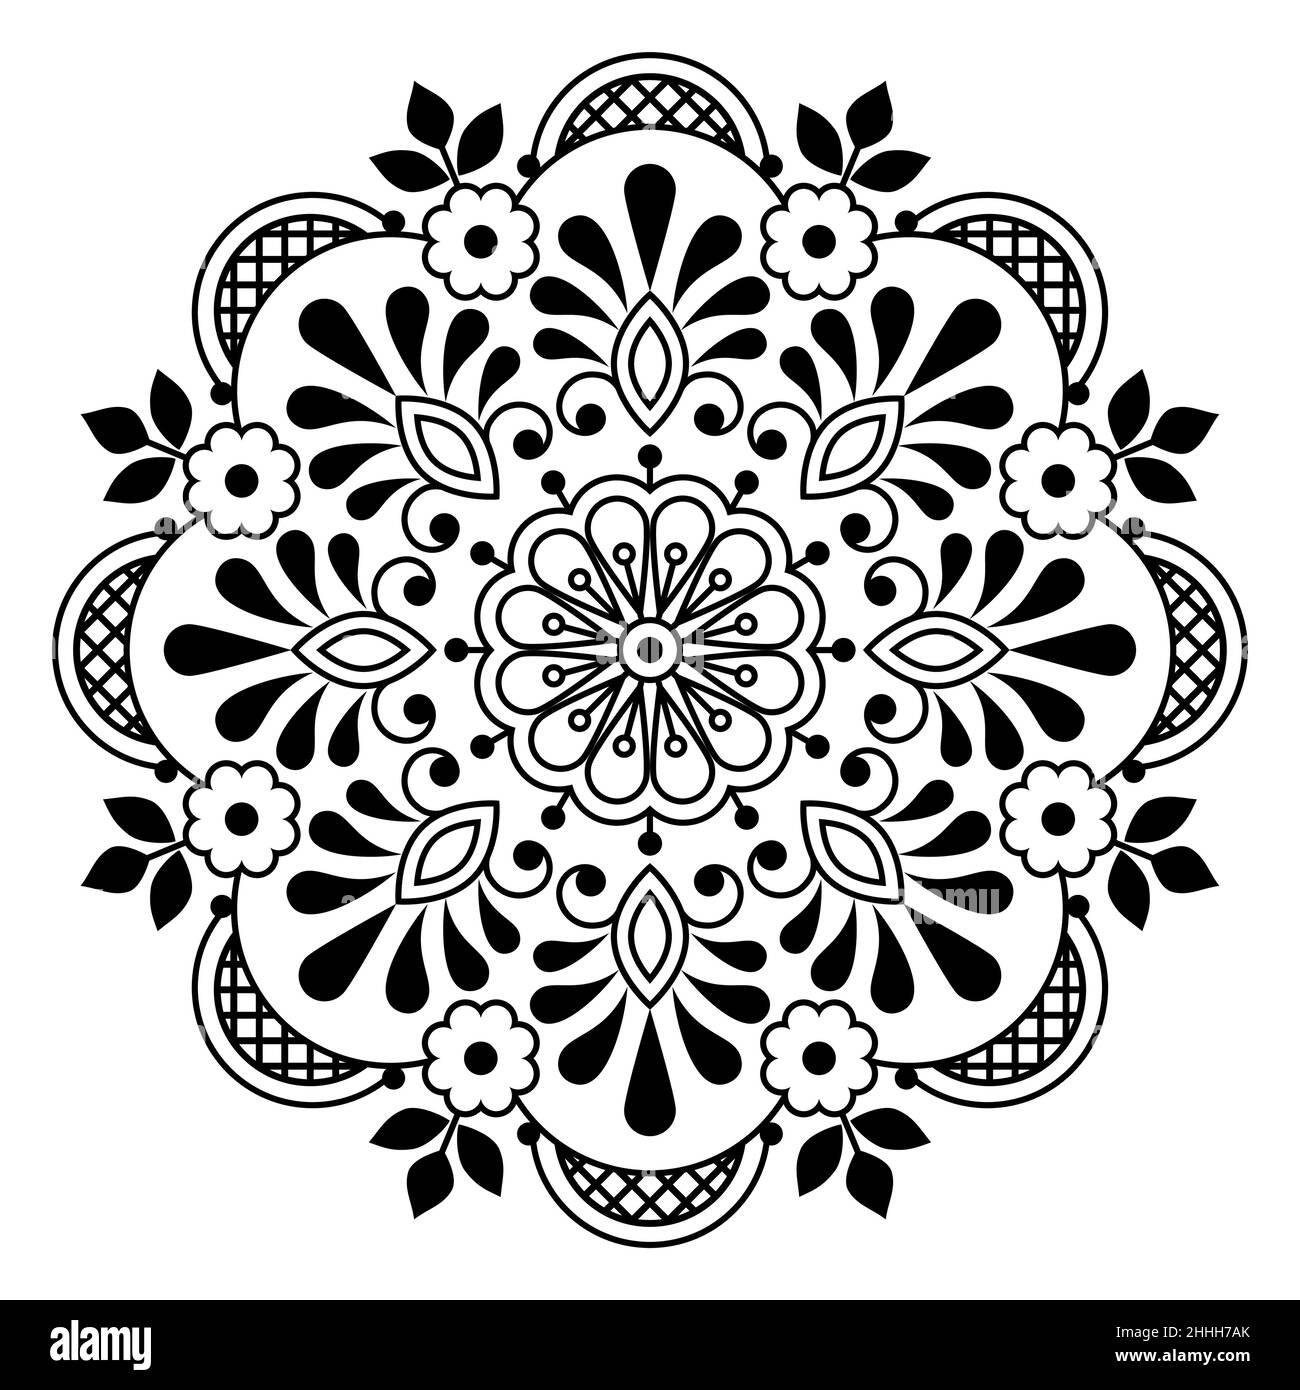 Art folklorique scandinave vecteur mandala design avec fleurs, carte de voeux ou invitation de mariage motif floral inspiré par et ancienne dentelle et broderie o Illustration de Vecteur